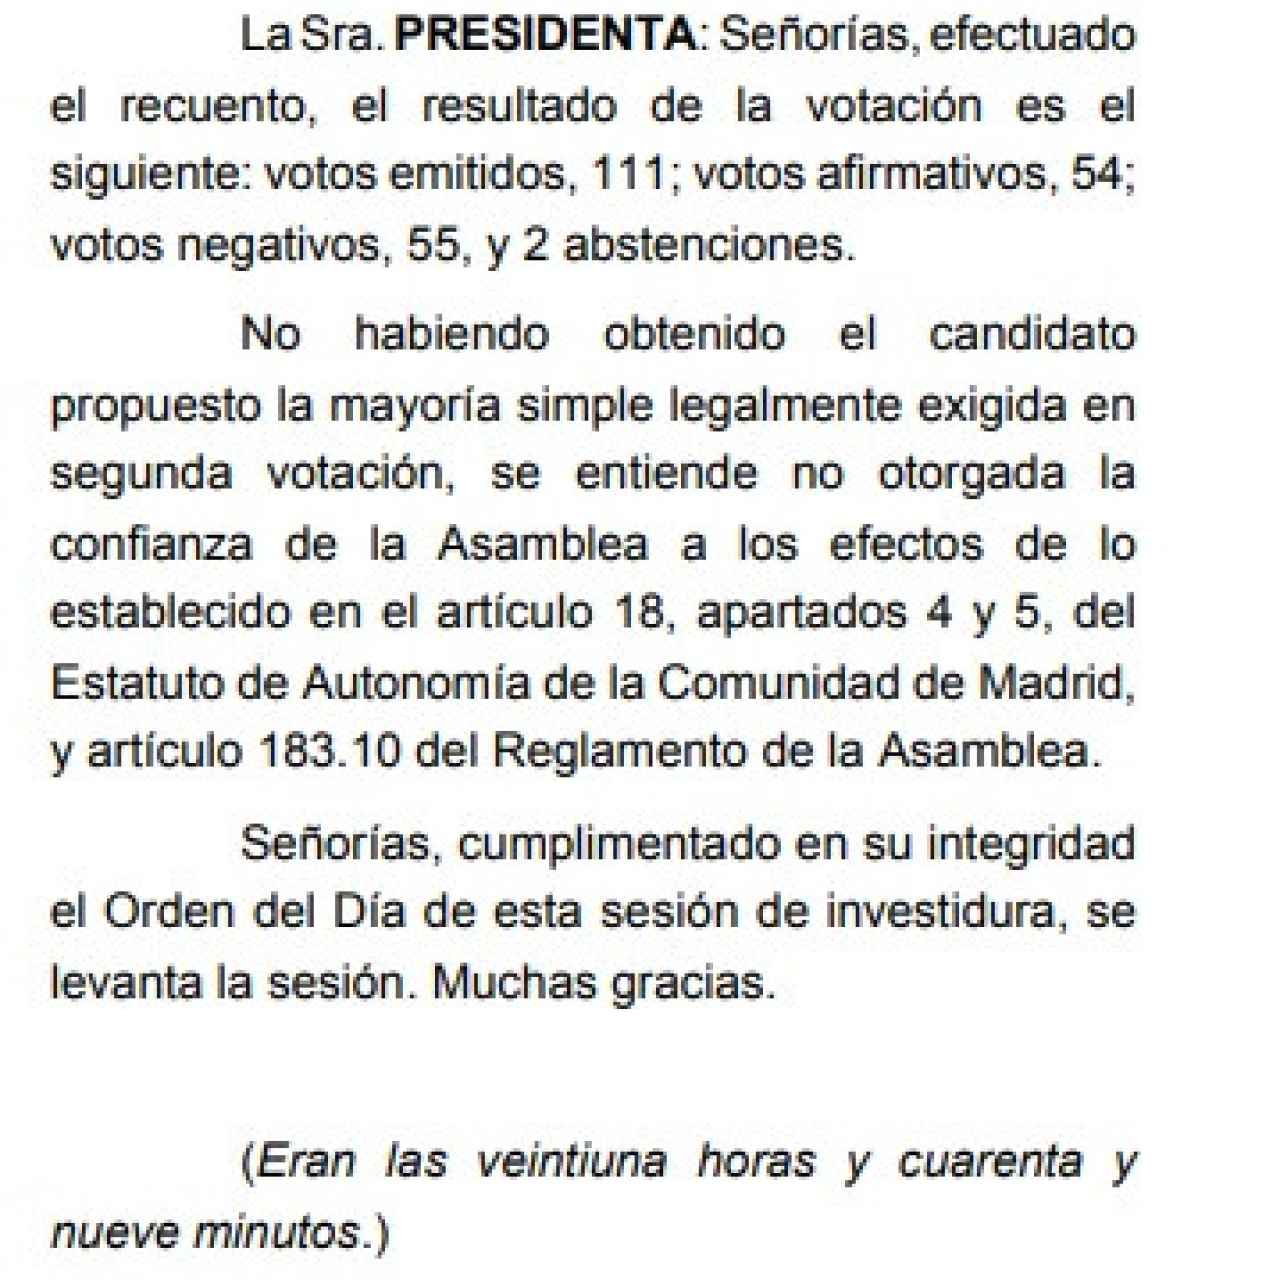 Pantallazo del Diario de Sesiones de la Asamblea de Madrid.